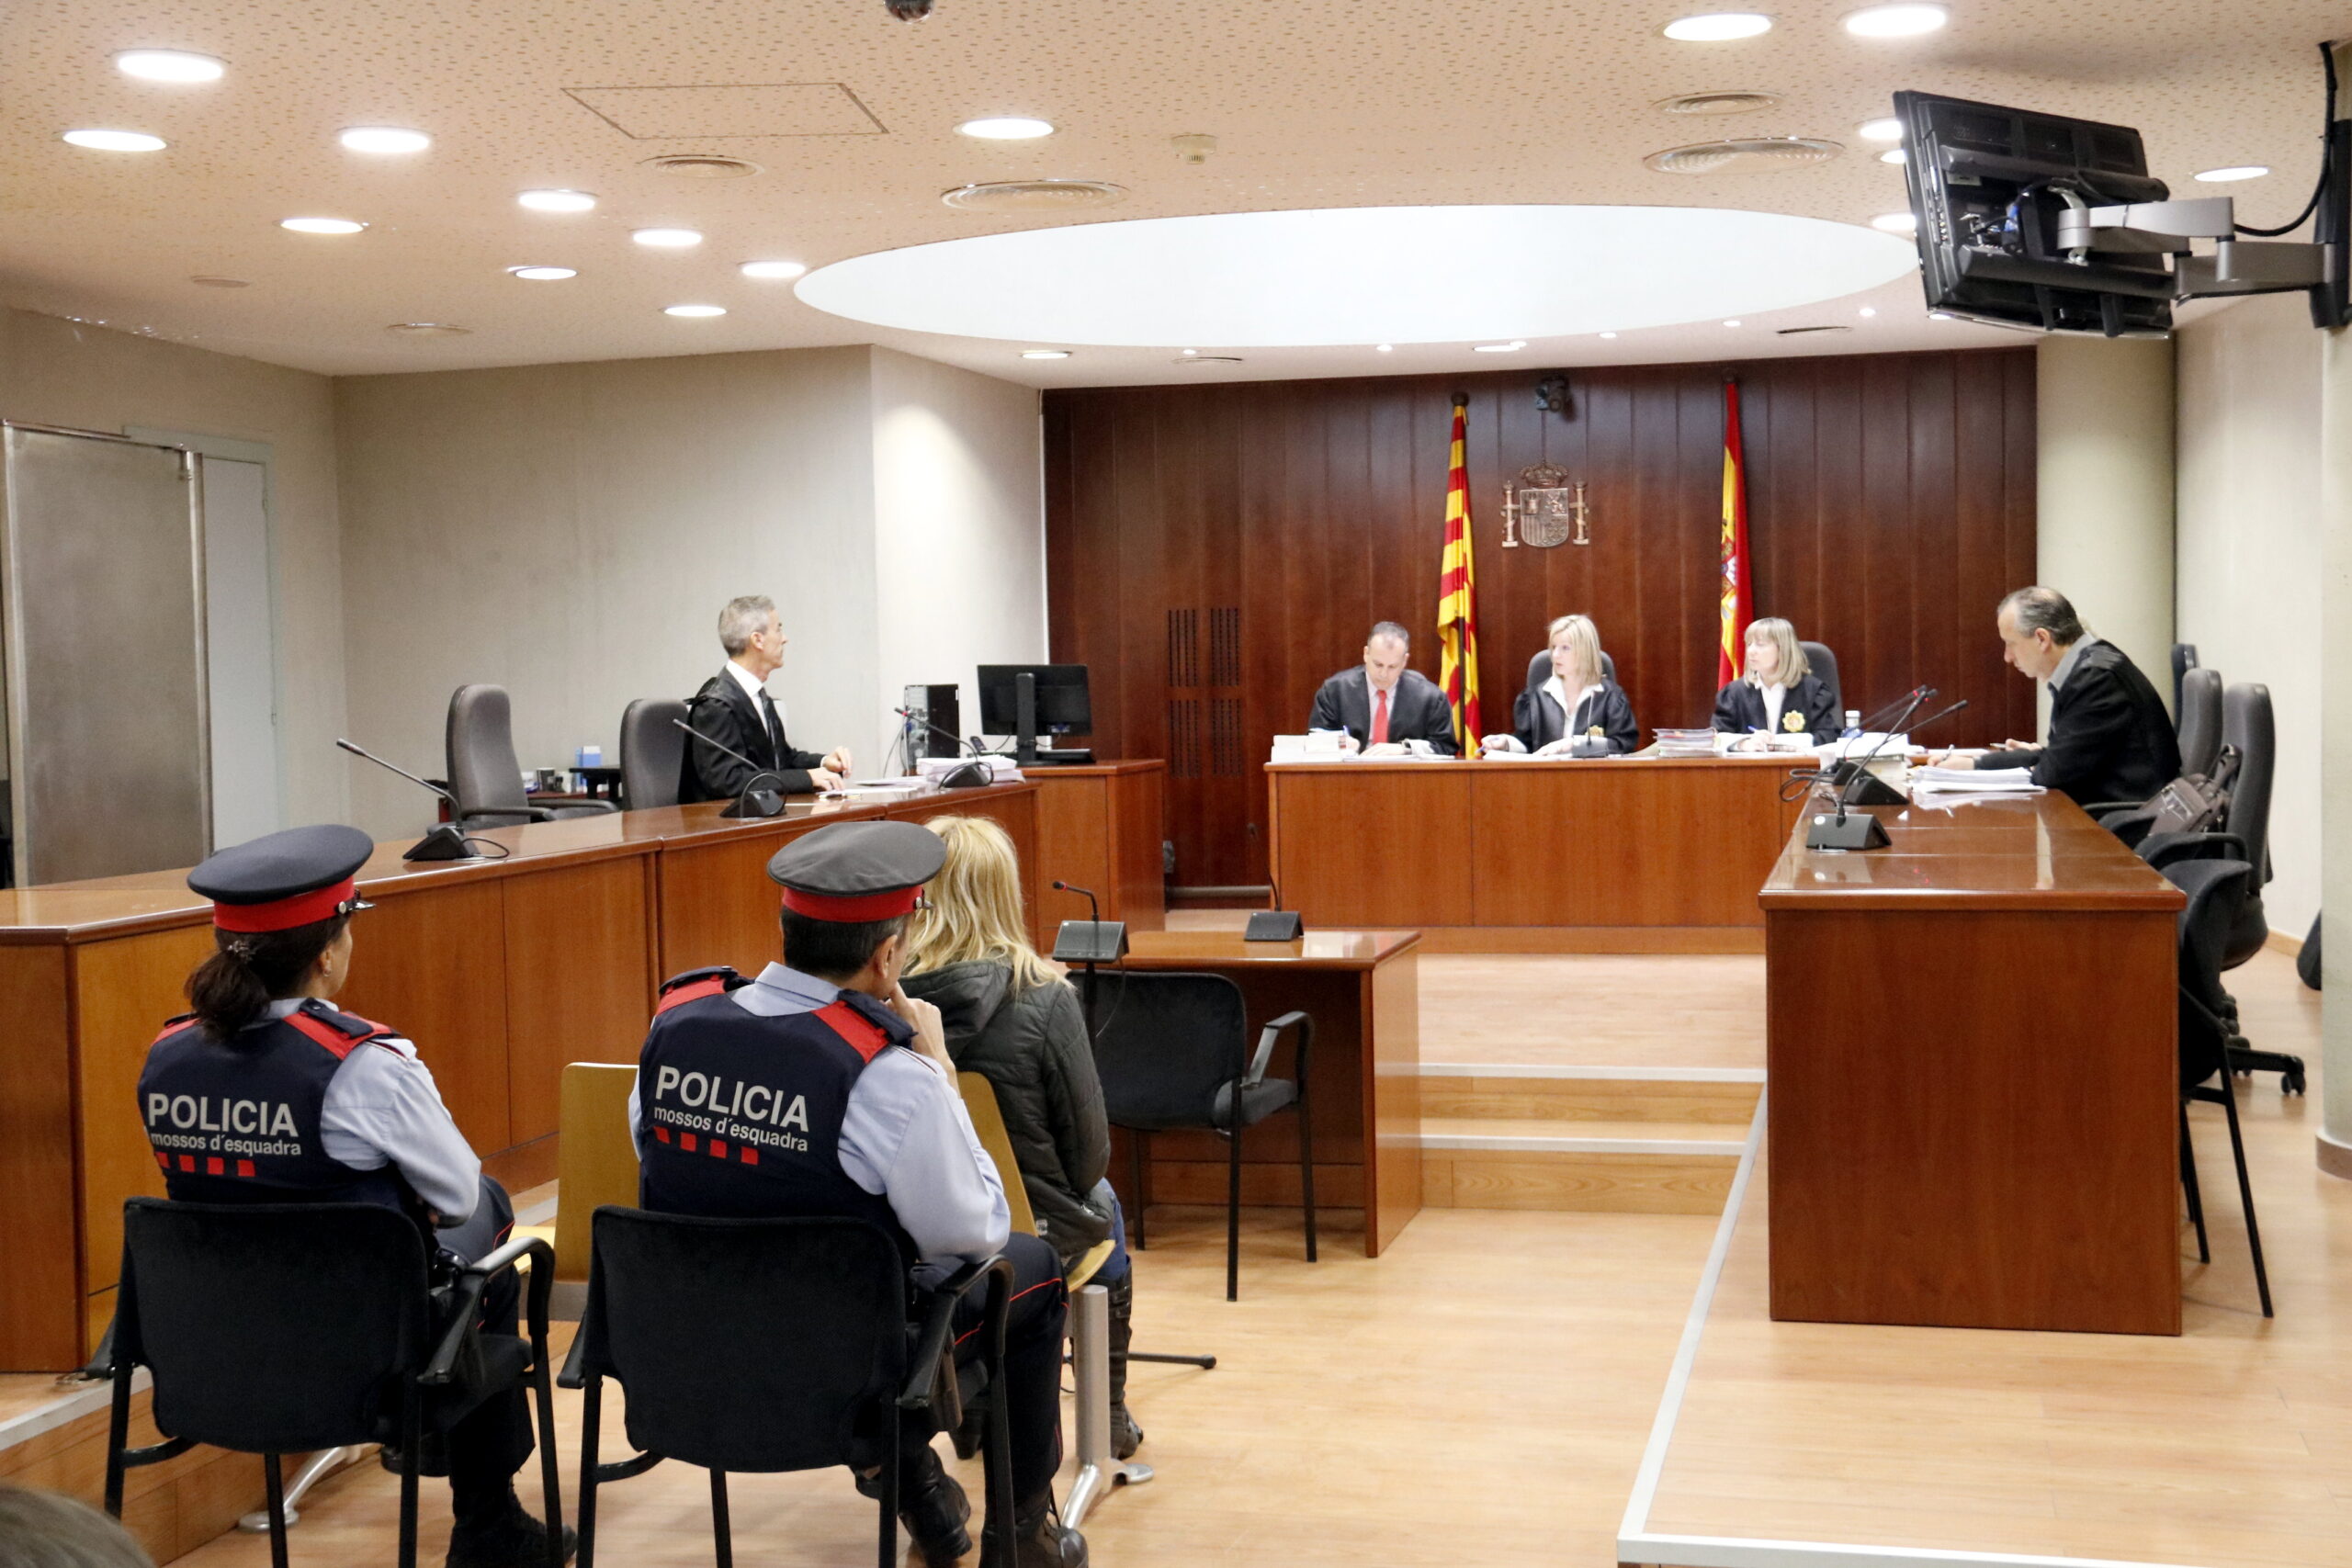 Pla general de la dona acusada d'intentar matar el seu marit a Mollerussa, durant la declaració al judici a l'Audiència de Lleida. Imatge del 10 d'abril de 2019. (Horitzontal)